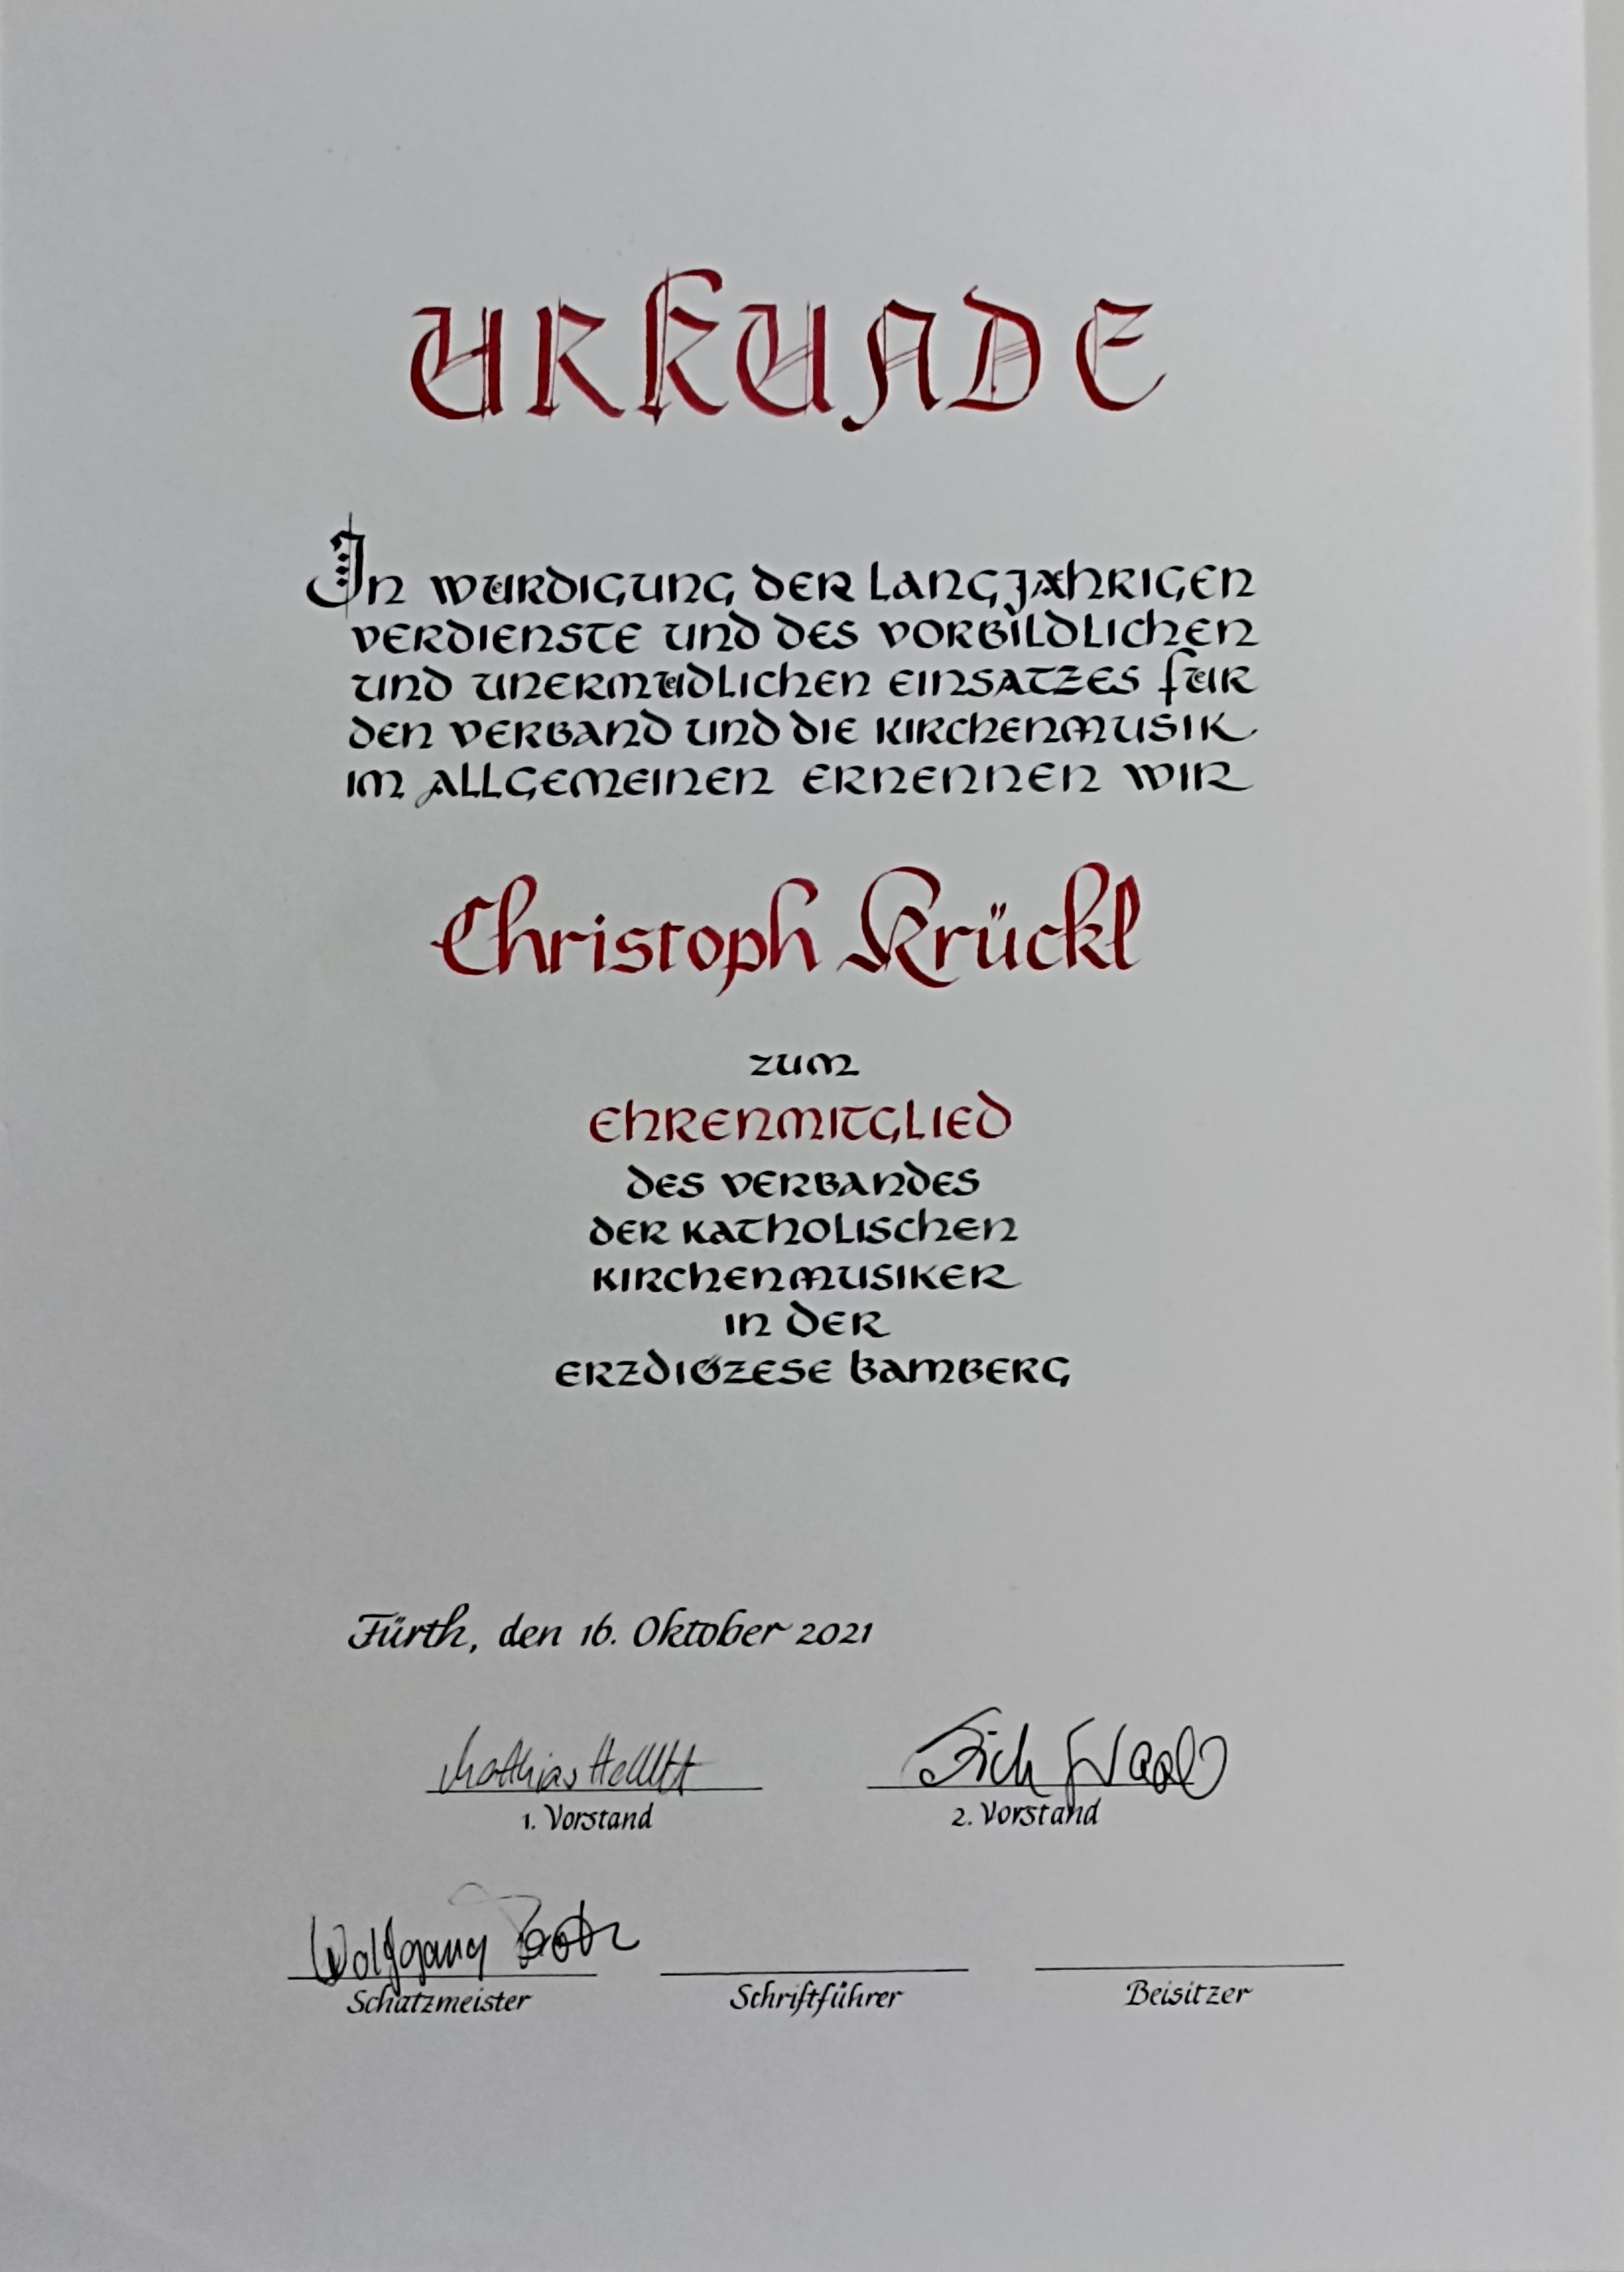 Die Urkunde für die Ehrenmitgliedschaft von Christoph Krückl